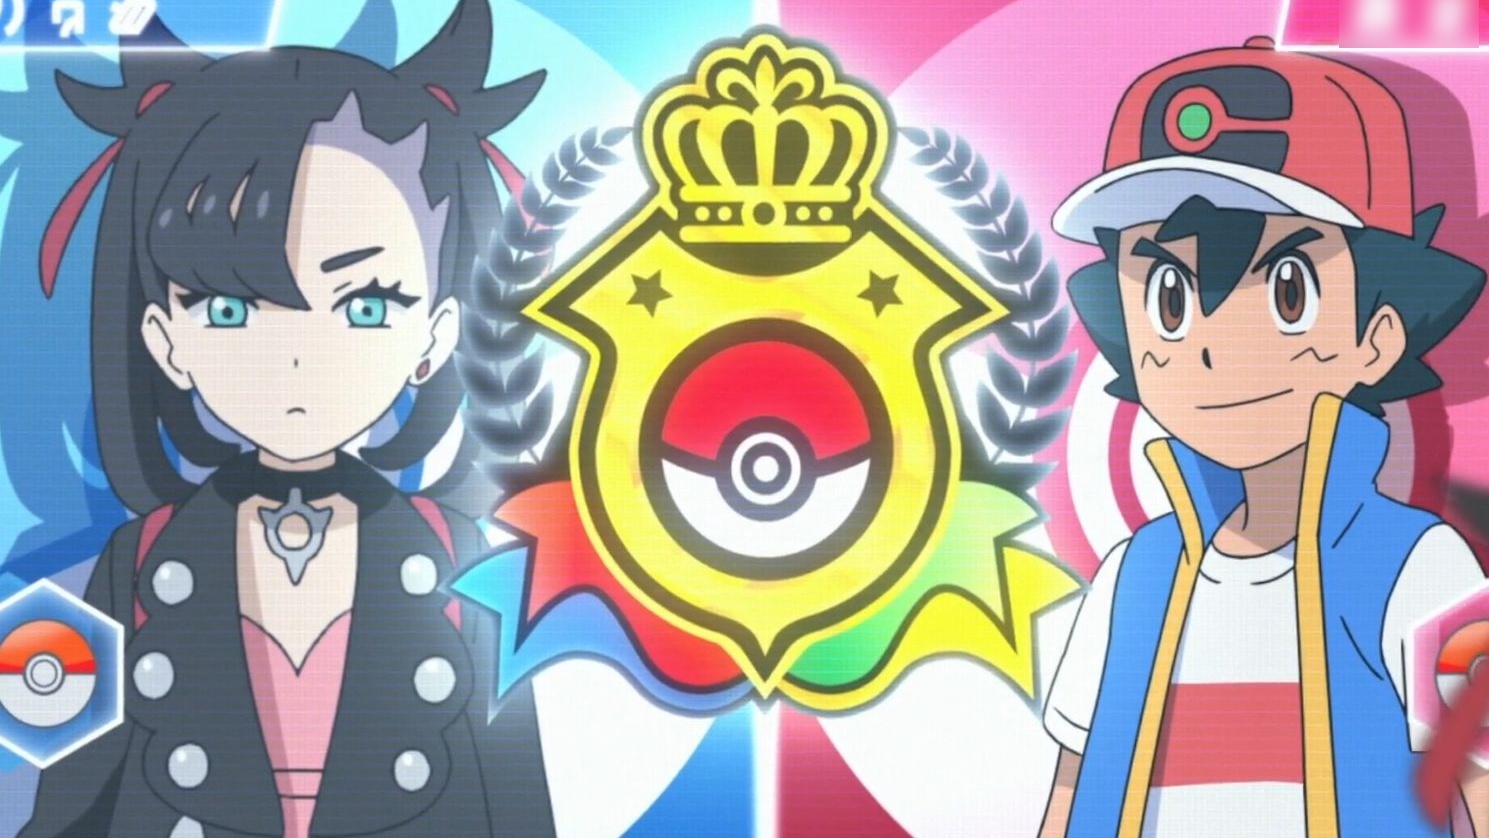 Pokémon: Jornadas Supremas - Ash vs Marnie